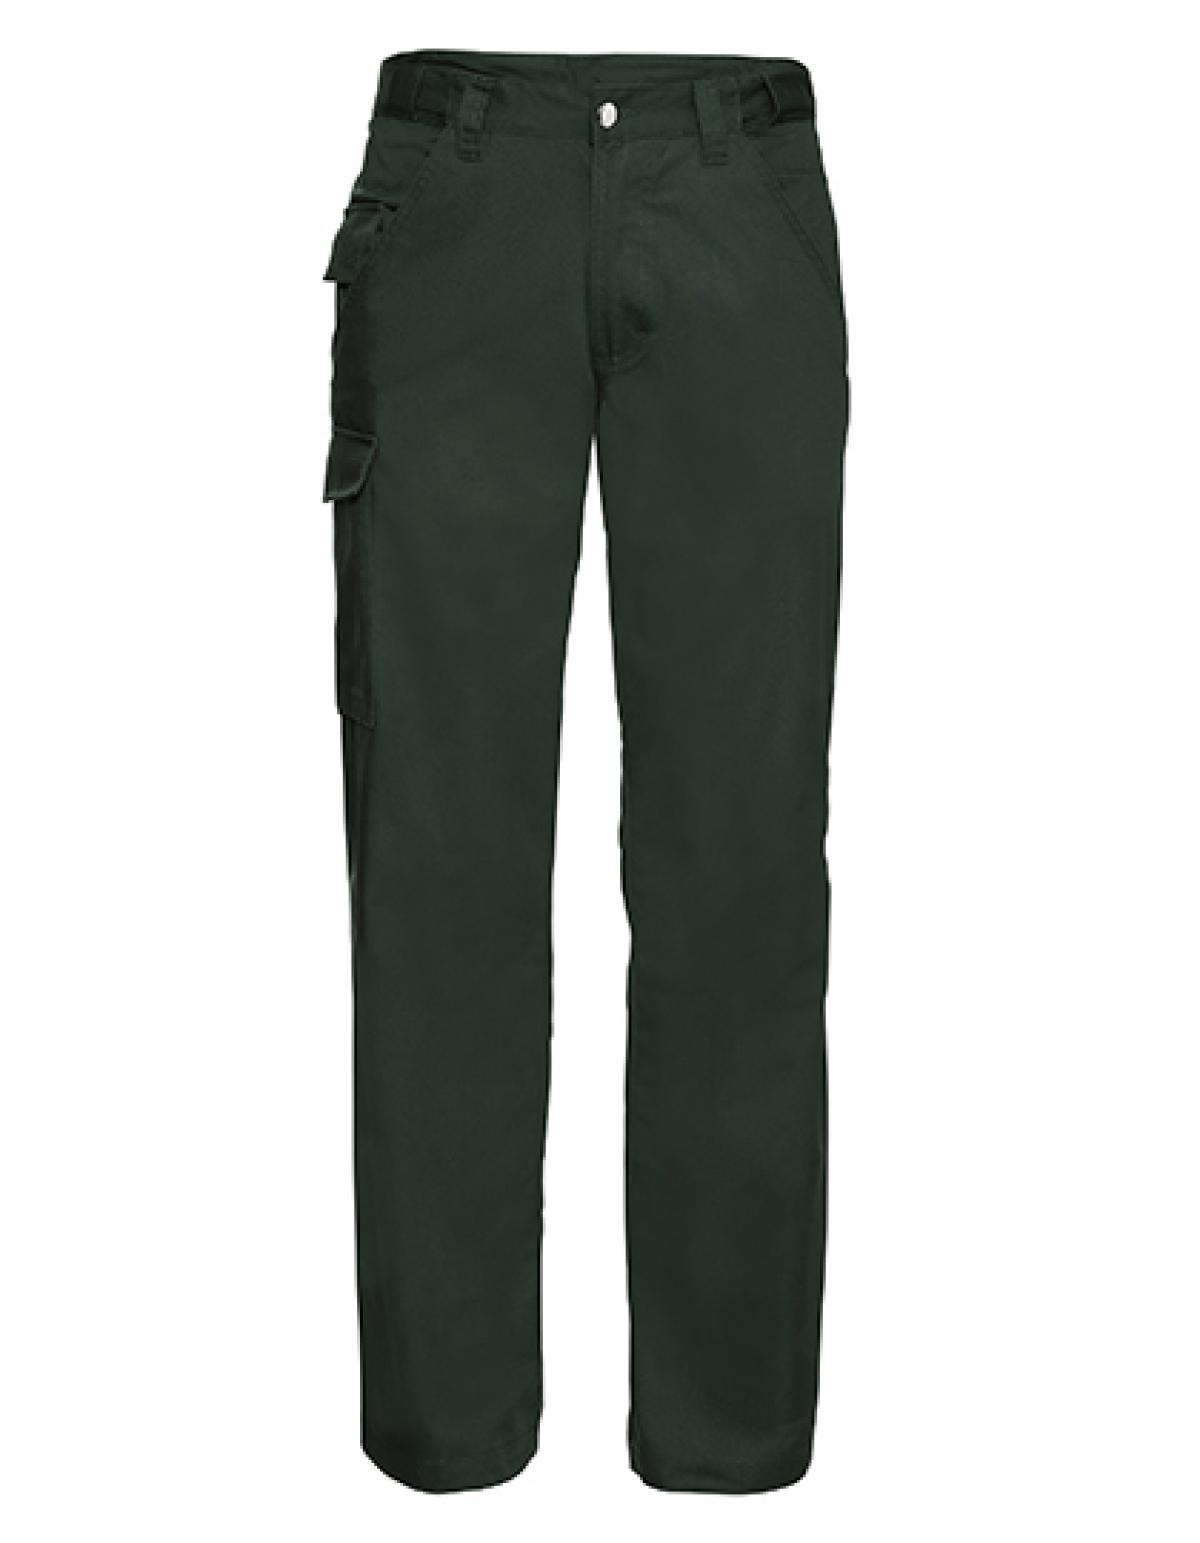 Indexbild 3 - Workwear-Hose aus Polyester-/Baumwoll-Twill | Russell